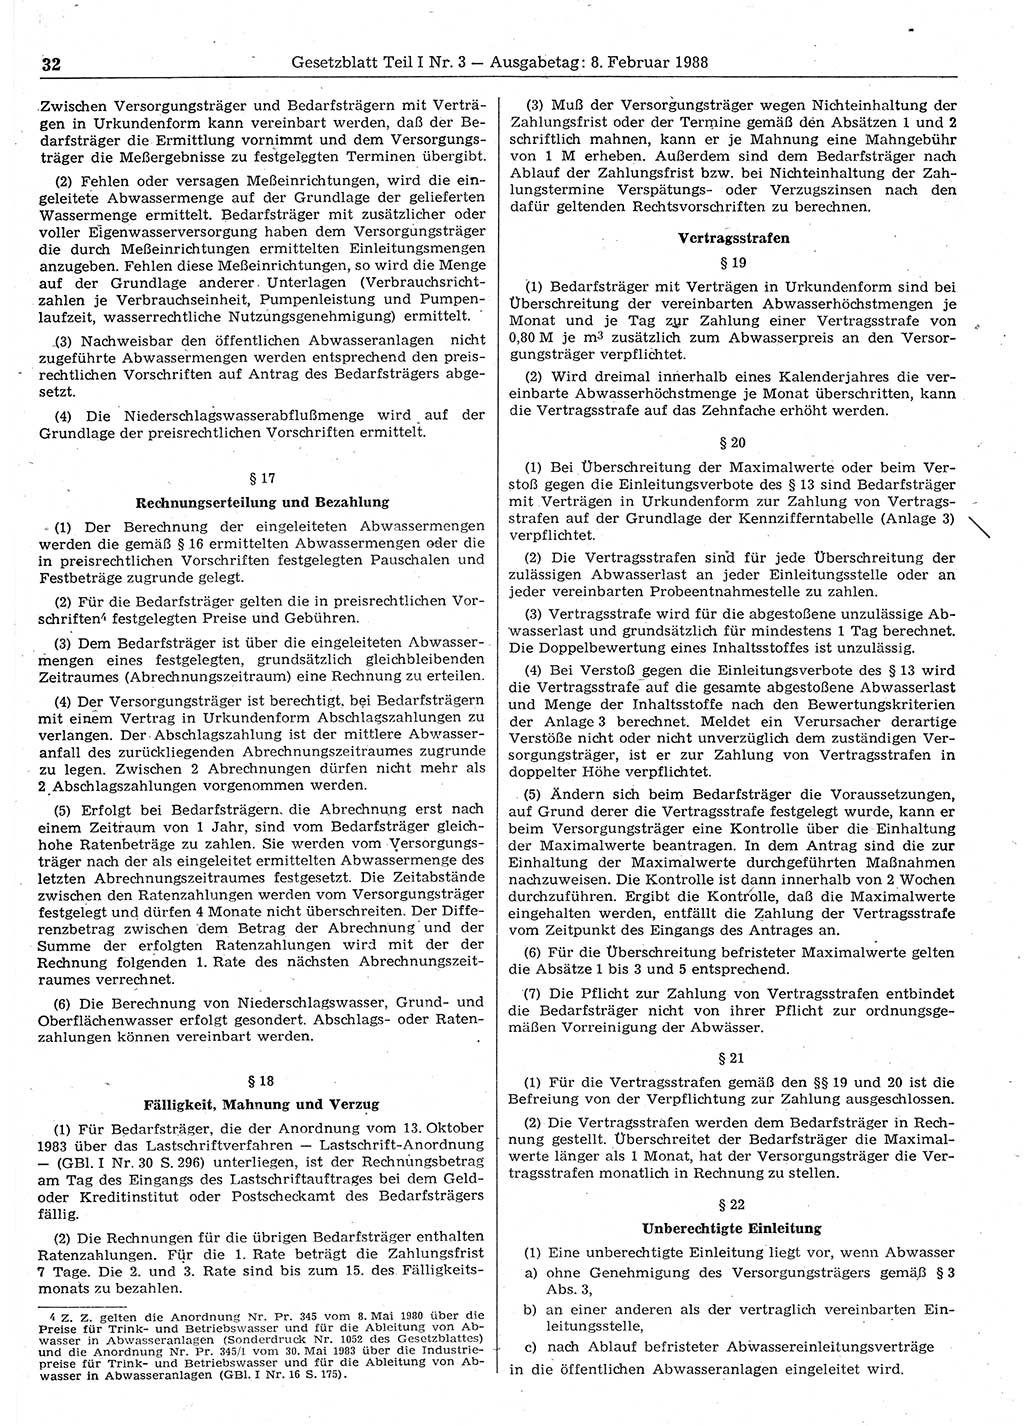 Gesetzblatt (GBl.) der Deutschen Demokratischen Republik (DDR) Teil Ⅰ 1988, Seite 32 (GBl. DDR Ⅰ 1988, S. 32)